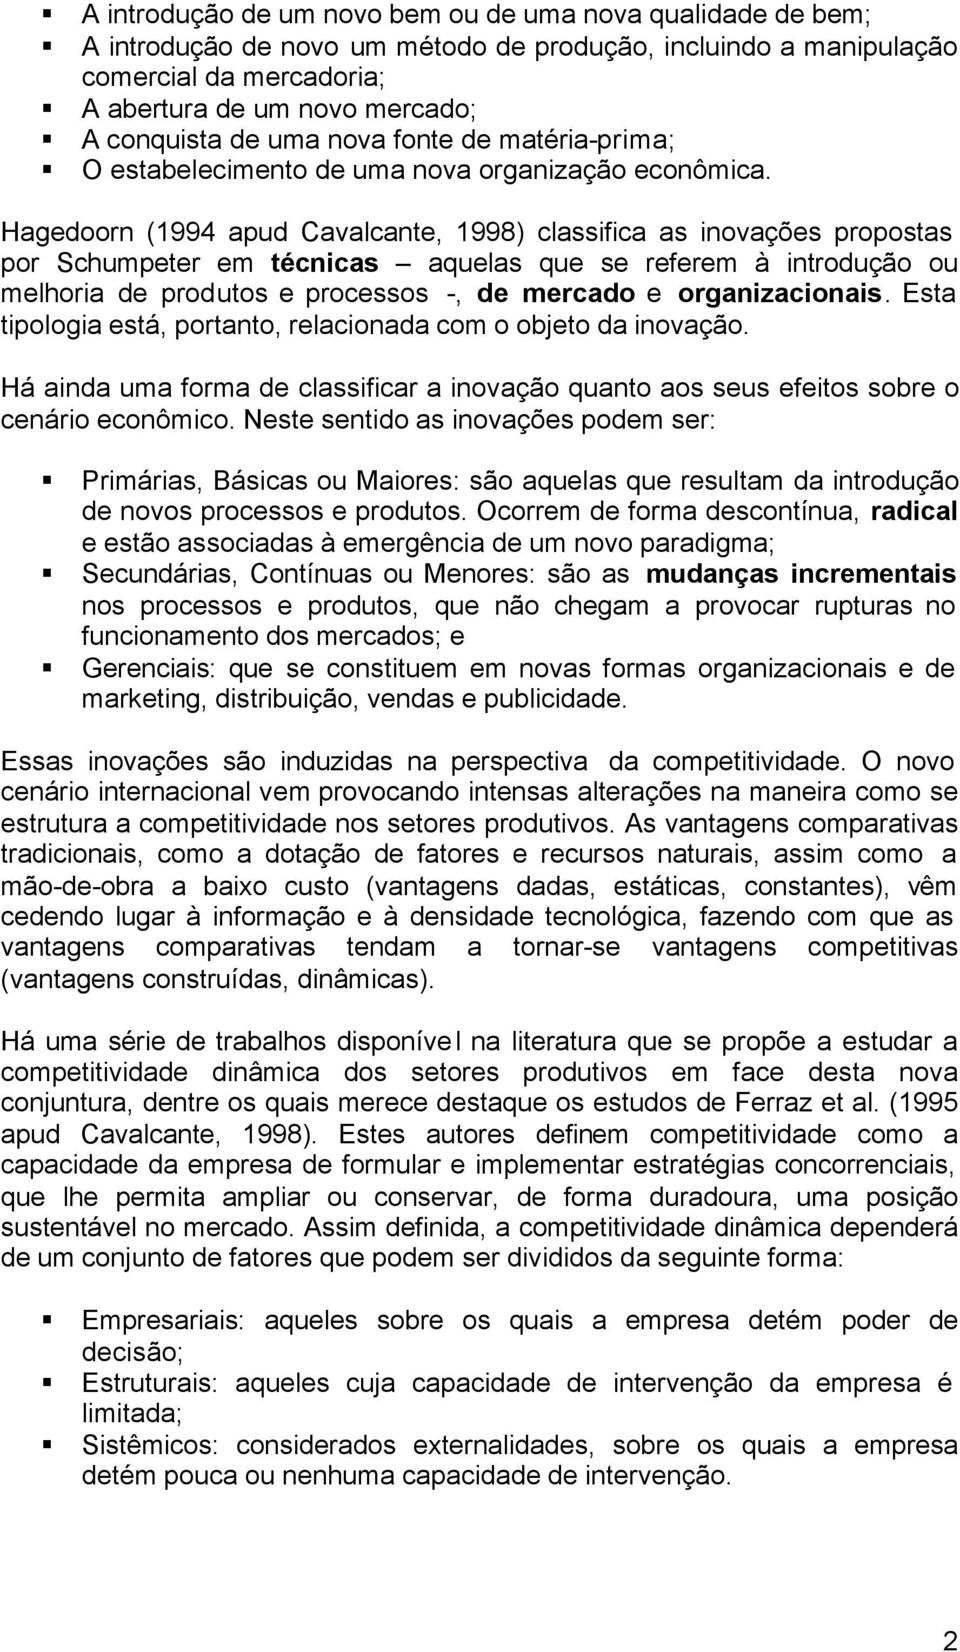 Hagedoorn (1994 apud Cavalcante, 1998) classifica as inovações propostas por Schumpeter em técnicas aquelas que se referem à introdução ou melhoria de produtos e processos -, de mercado e